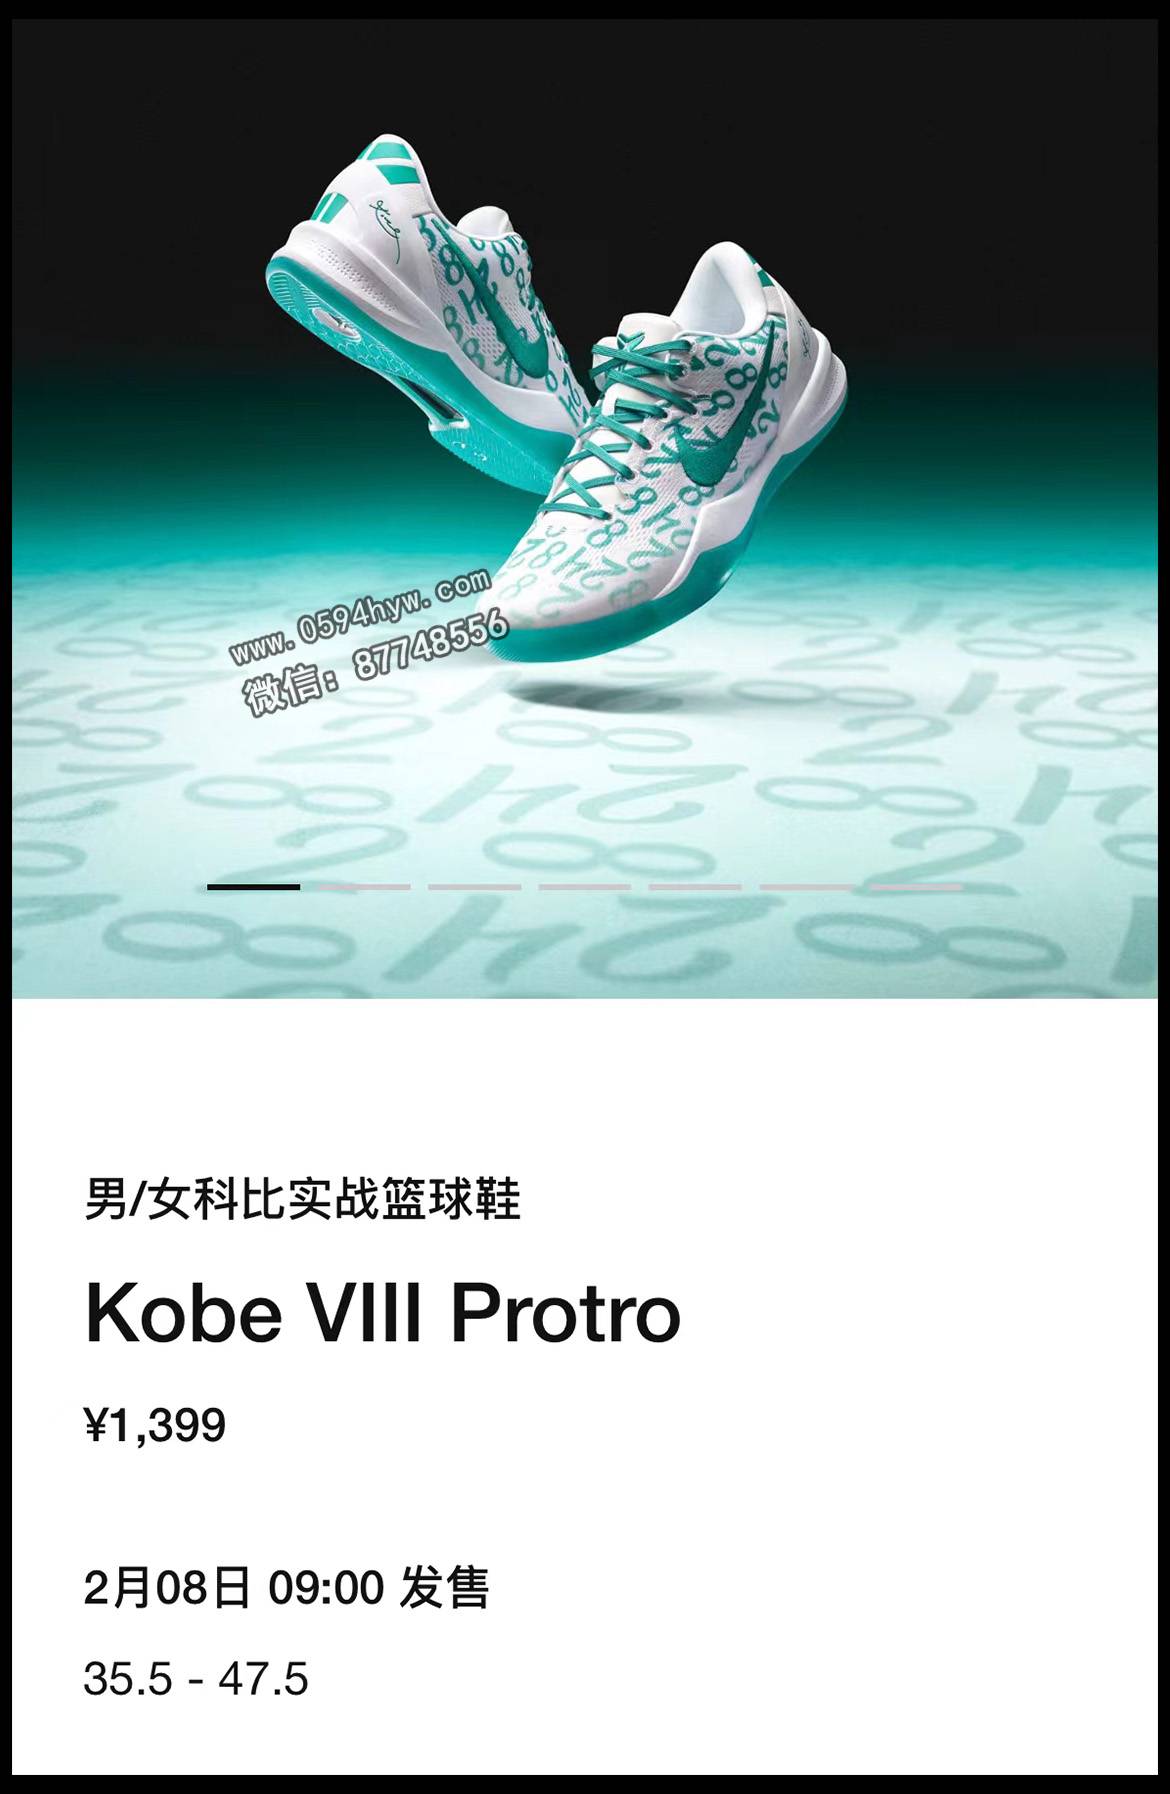 即将推出的全新鞋款！两款Kobe和银河KD4即将上市！